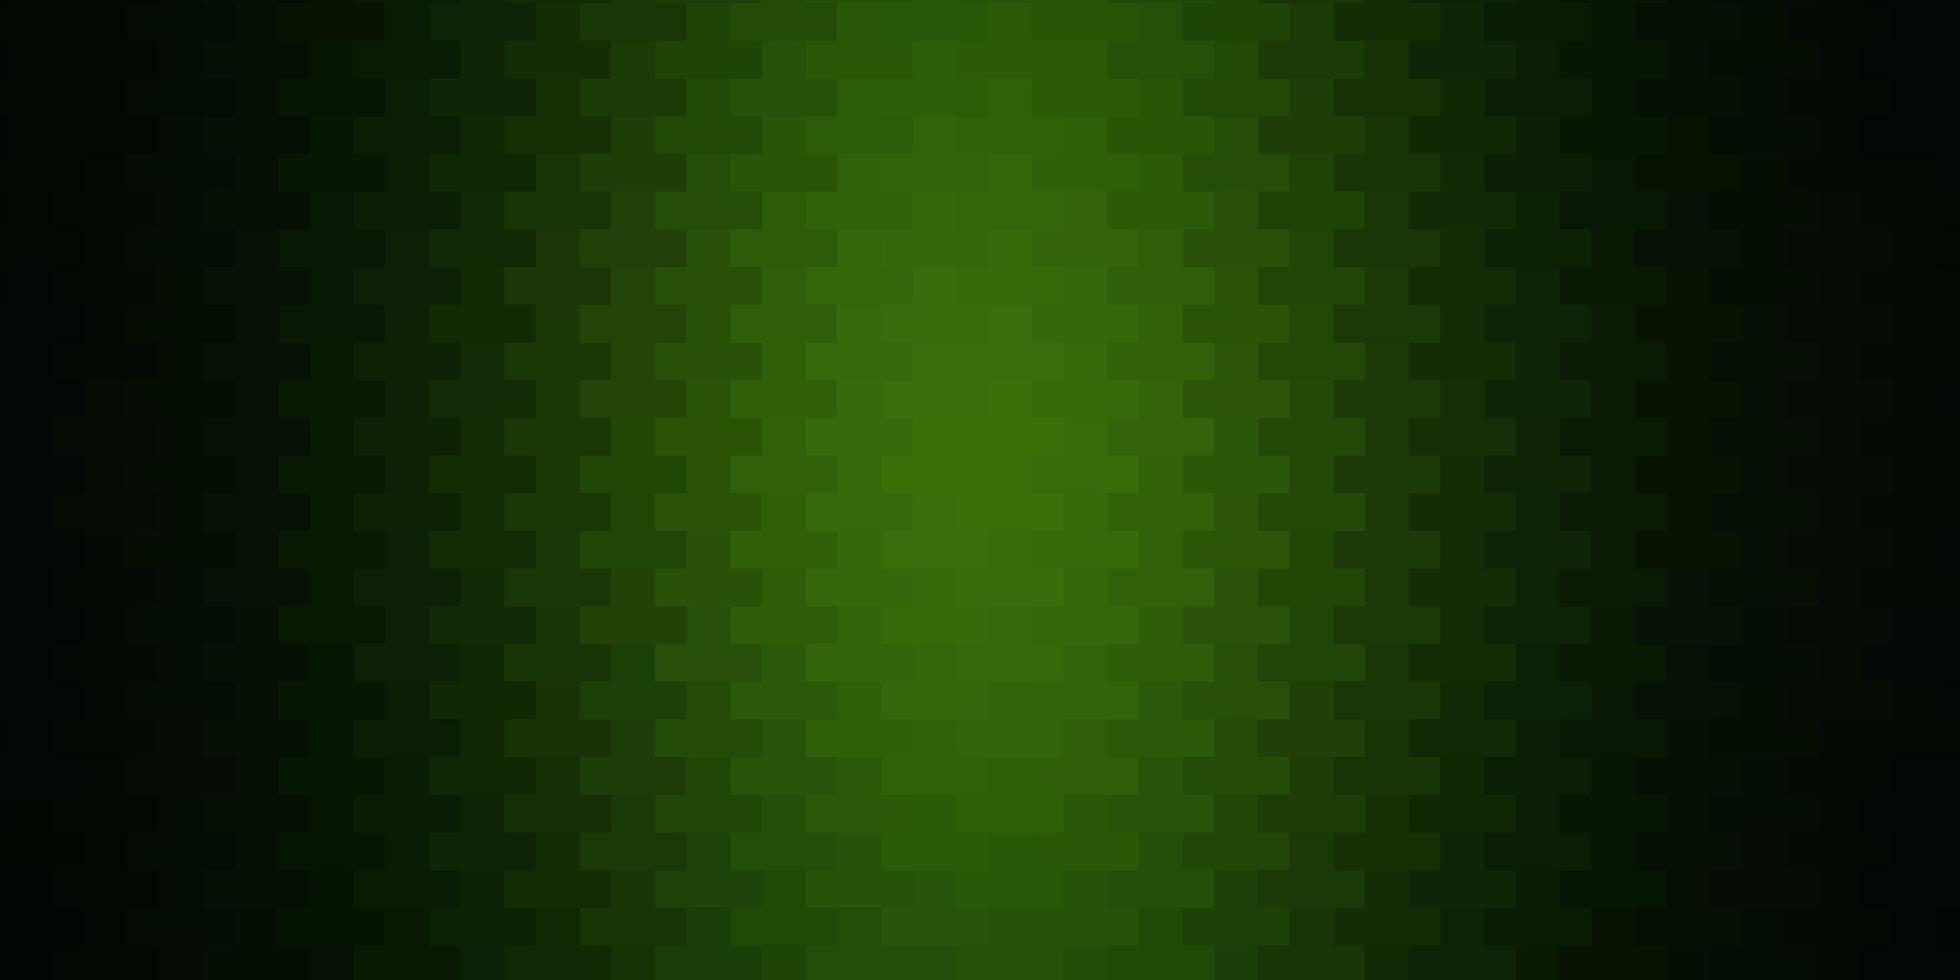 Fondo de vector verde oscuro con rectángulos. rectángulos con degradado de colores sobre fondo abstracto. patrón para comerciales, anuncios.